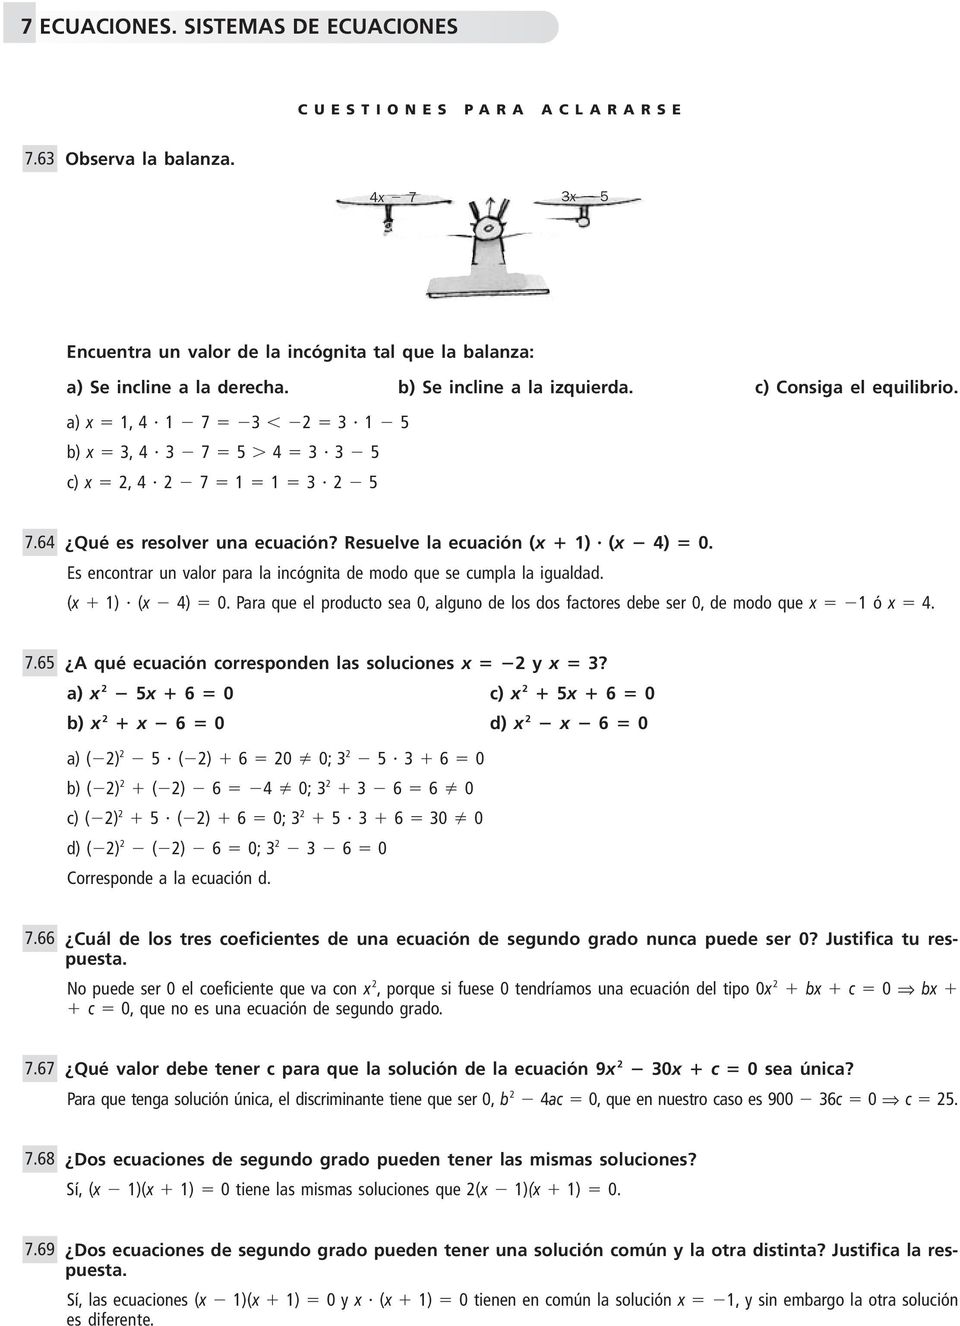 7.65 A qué ecuación corresponden las soluciones x y x?